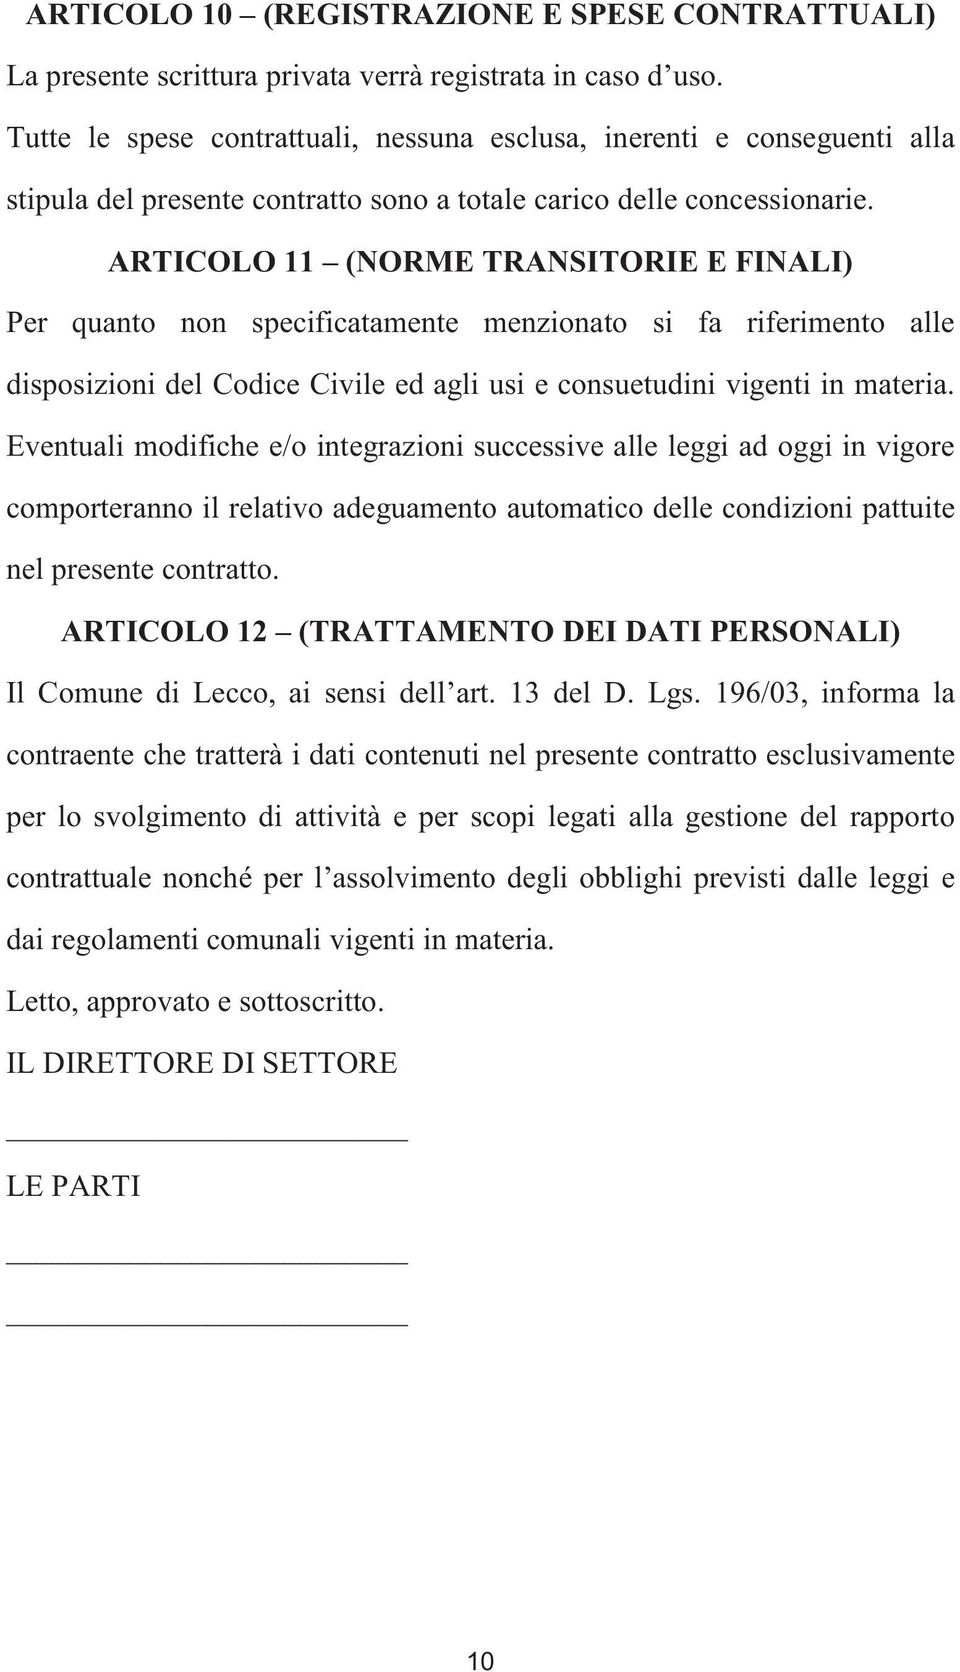 ARTICOLO 11 (NORME TRANSITORIE E FINALI) Per quanto non specificatamente menzionato si fa riferimento alle disposizioni del Codice Civile ed agli usi e consuetudini vigenti in materia.